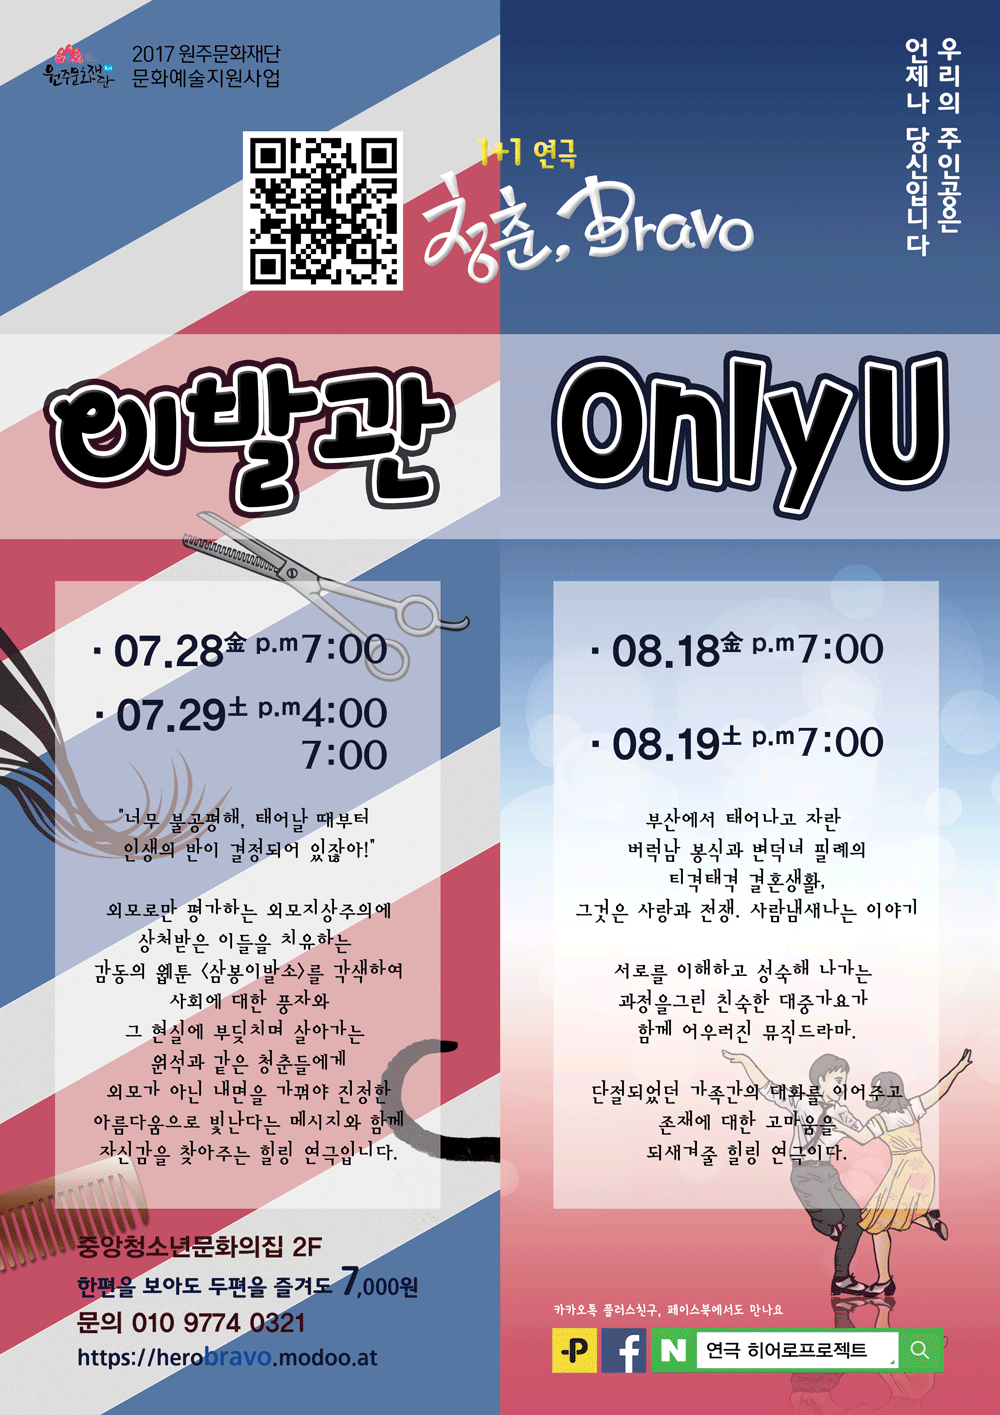 연극 Only U - 히어로프로젝트의 연극1+1 '청춘, Bravo'